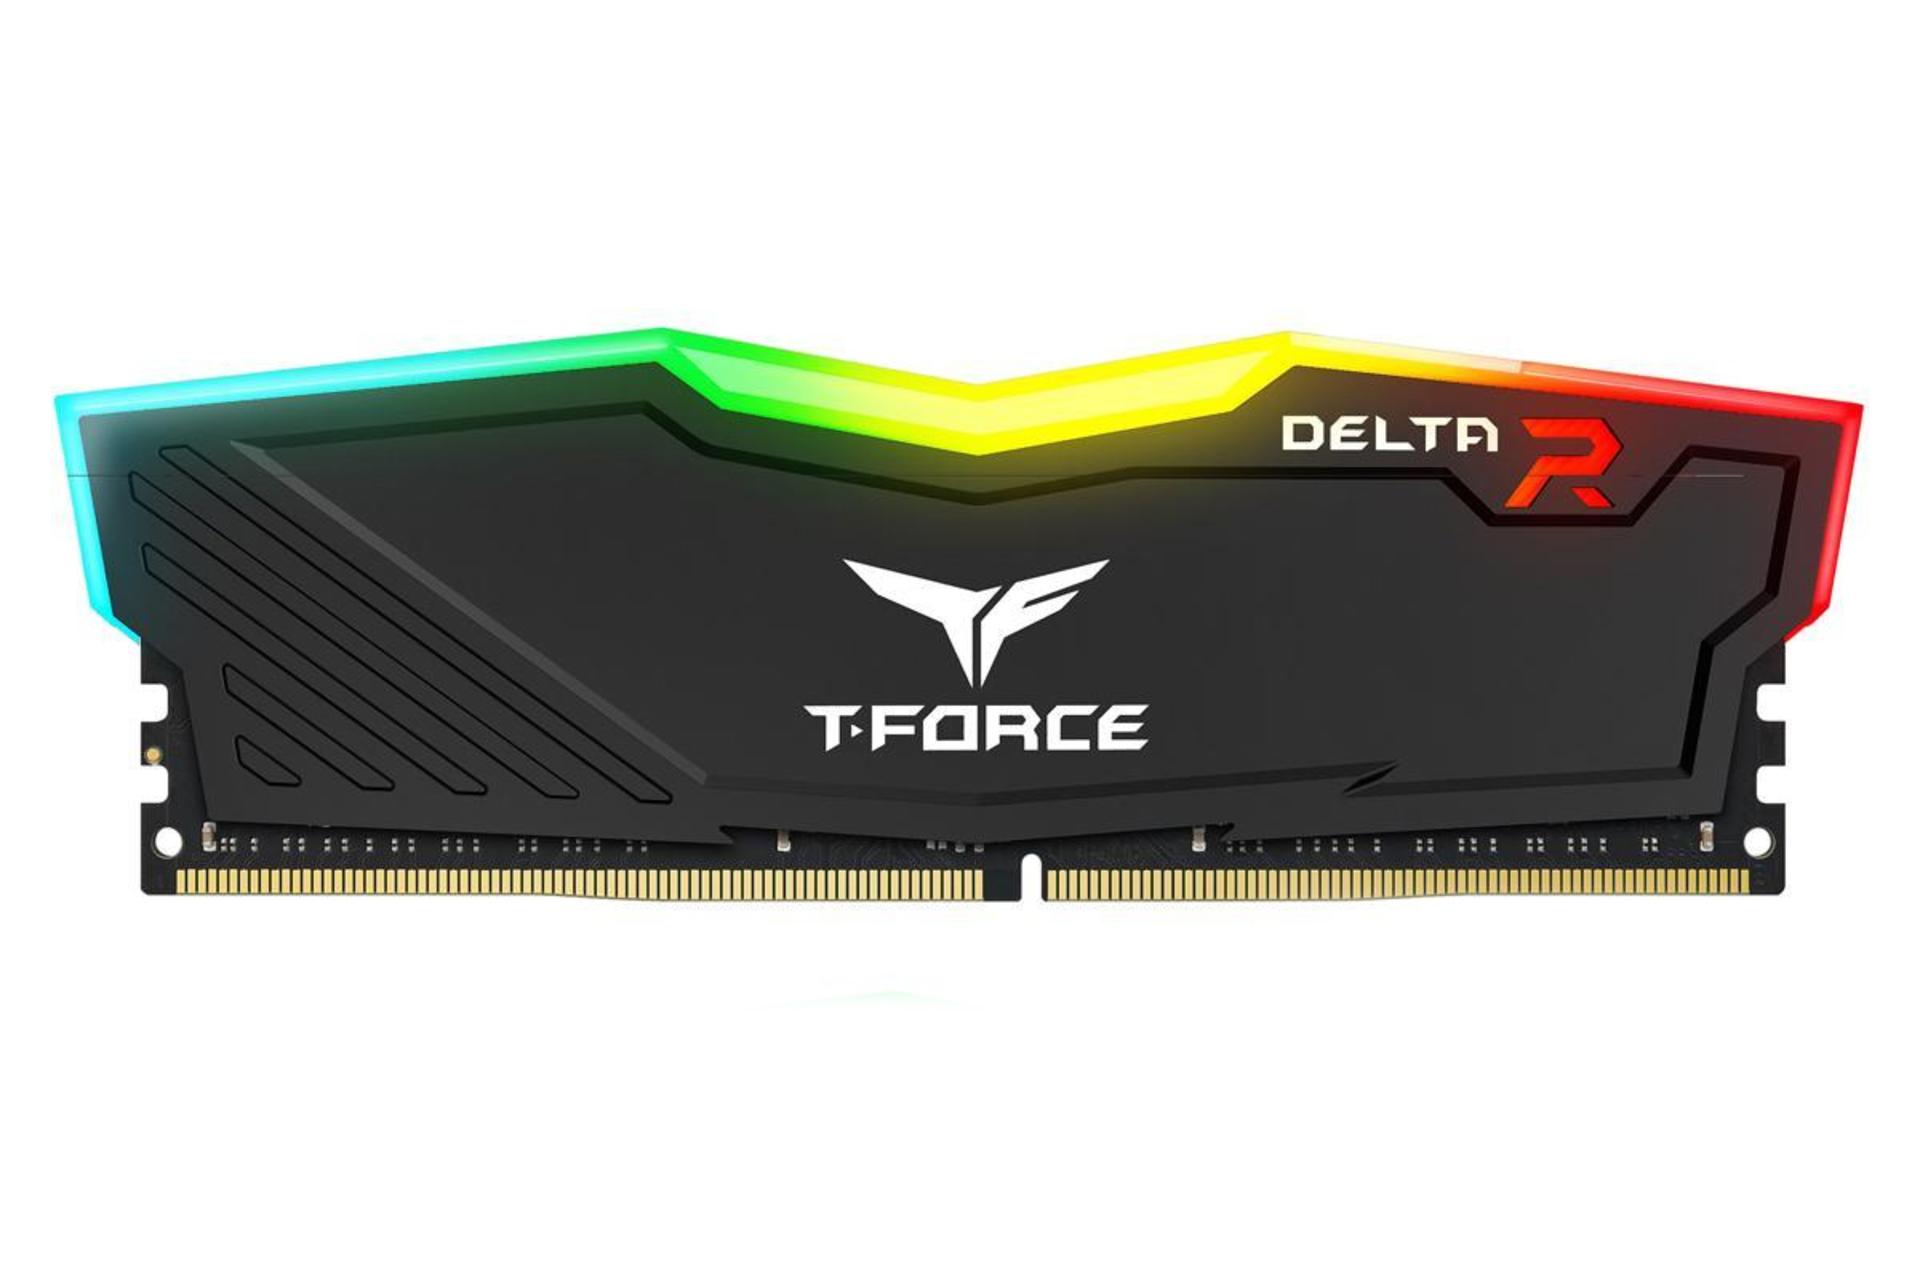 رم تیم گروپ T-FORCE DELTA RGB ظرفیت 16 گیگابایت از نوع DDR4-3200